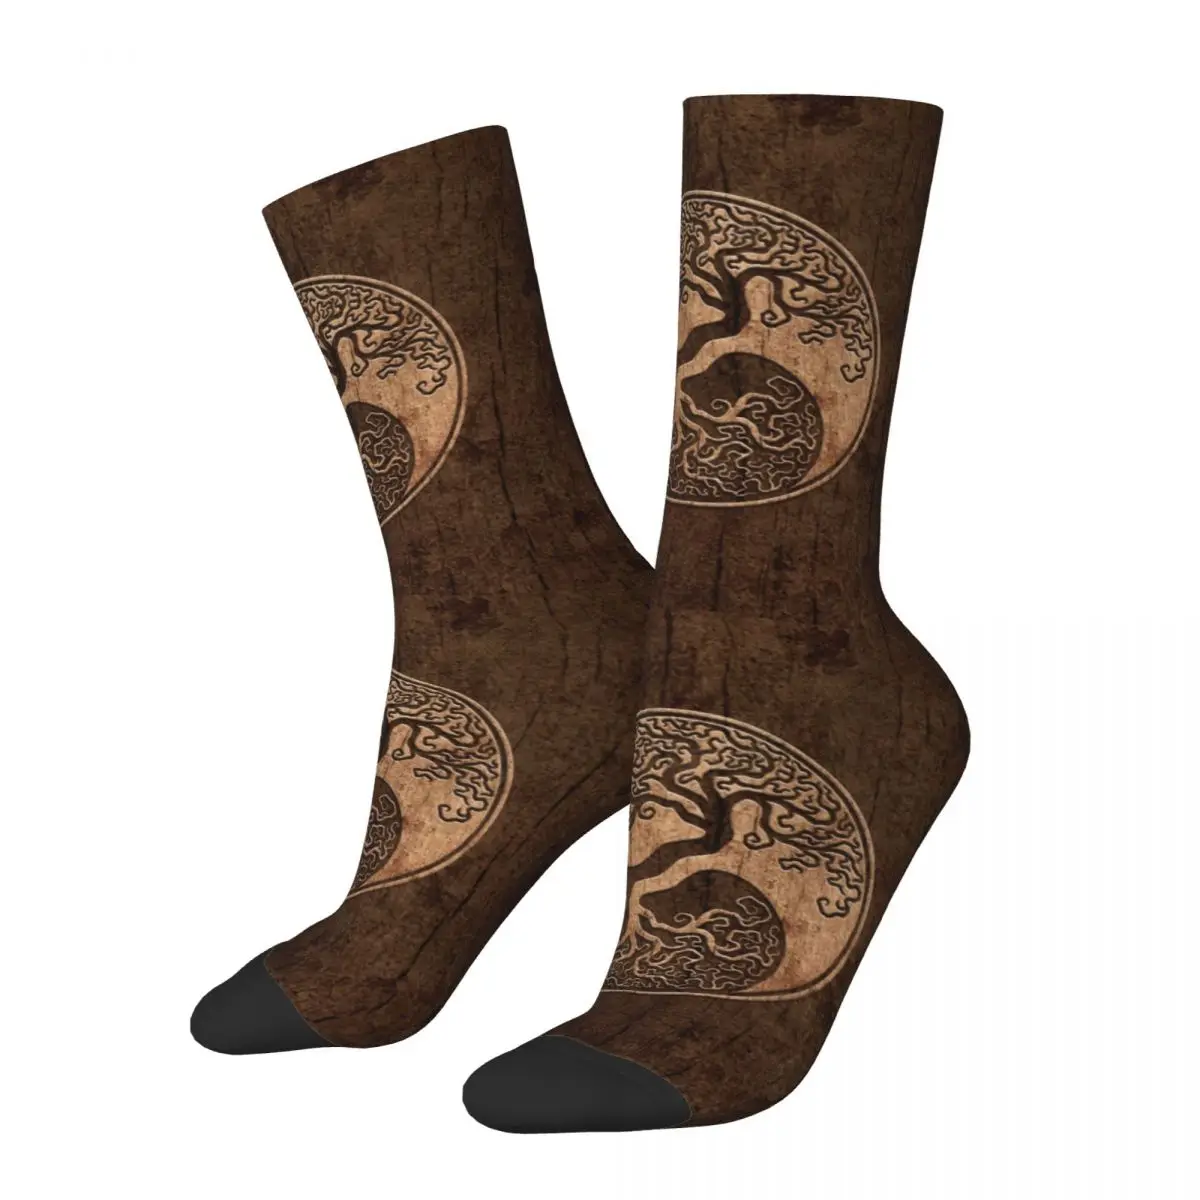 

Модные носки с изображением дерева жизни Инь Янь викингов, баскетбольная Экипировка, шероховатая текстура под дерево, технические характеристики, рождественские подарки для мужчин и женщин